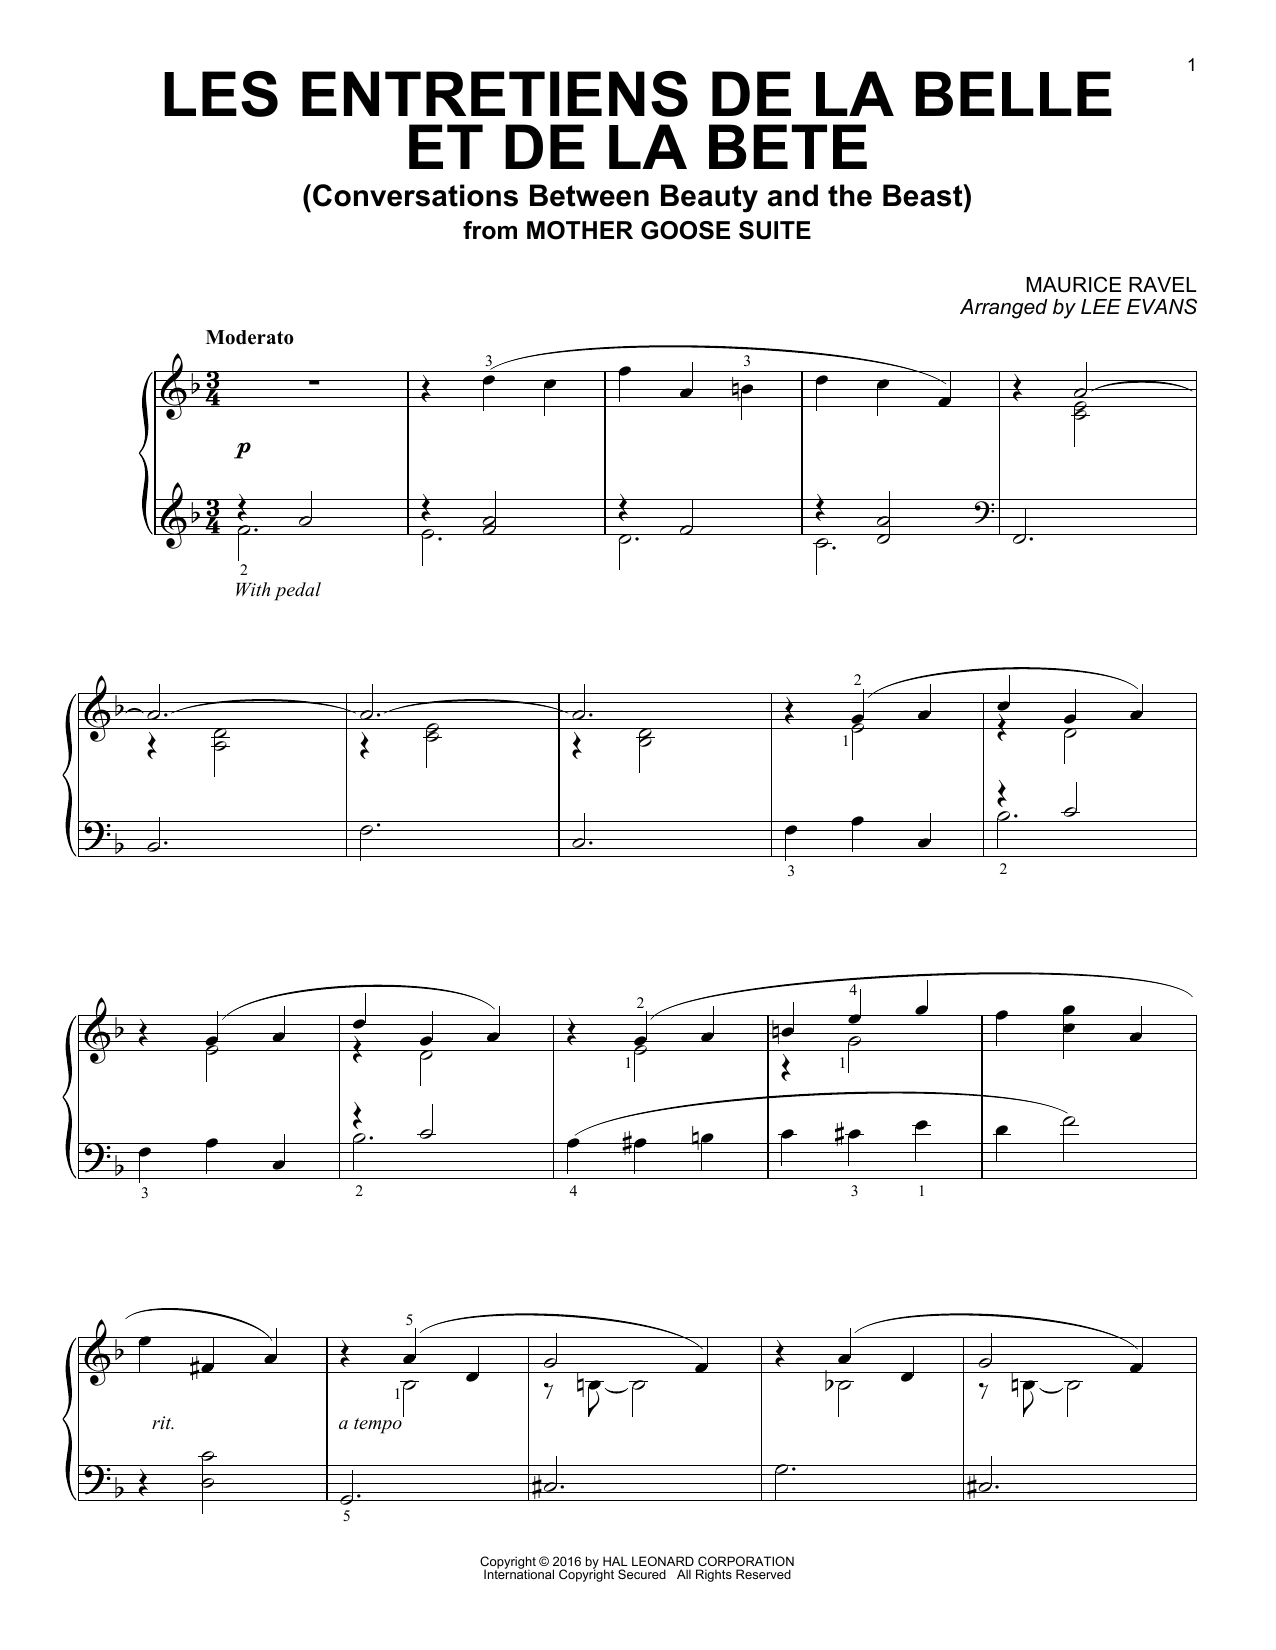 Lee Evans Les entretiens de la belle et de la bete (Conversations Between Beauty And The Beast) Sheet Music Notes & Chords for Piano - Download or Print PDF